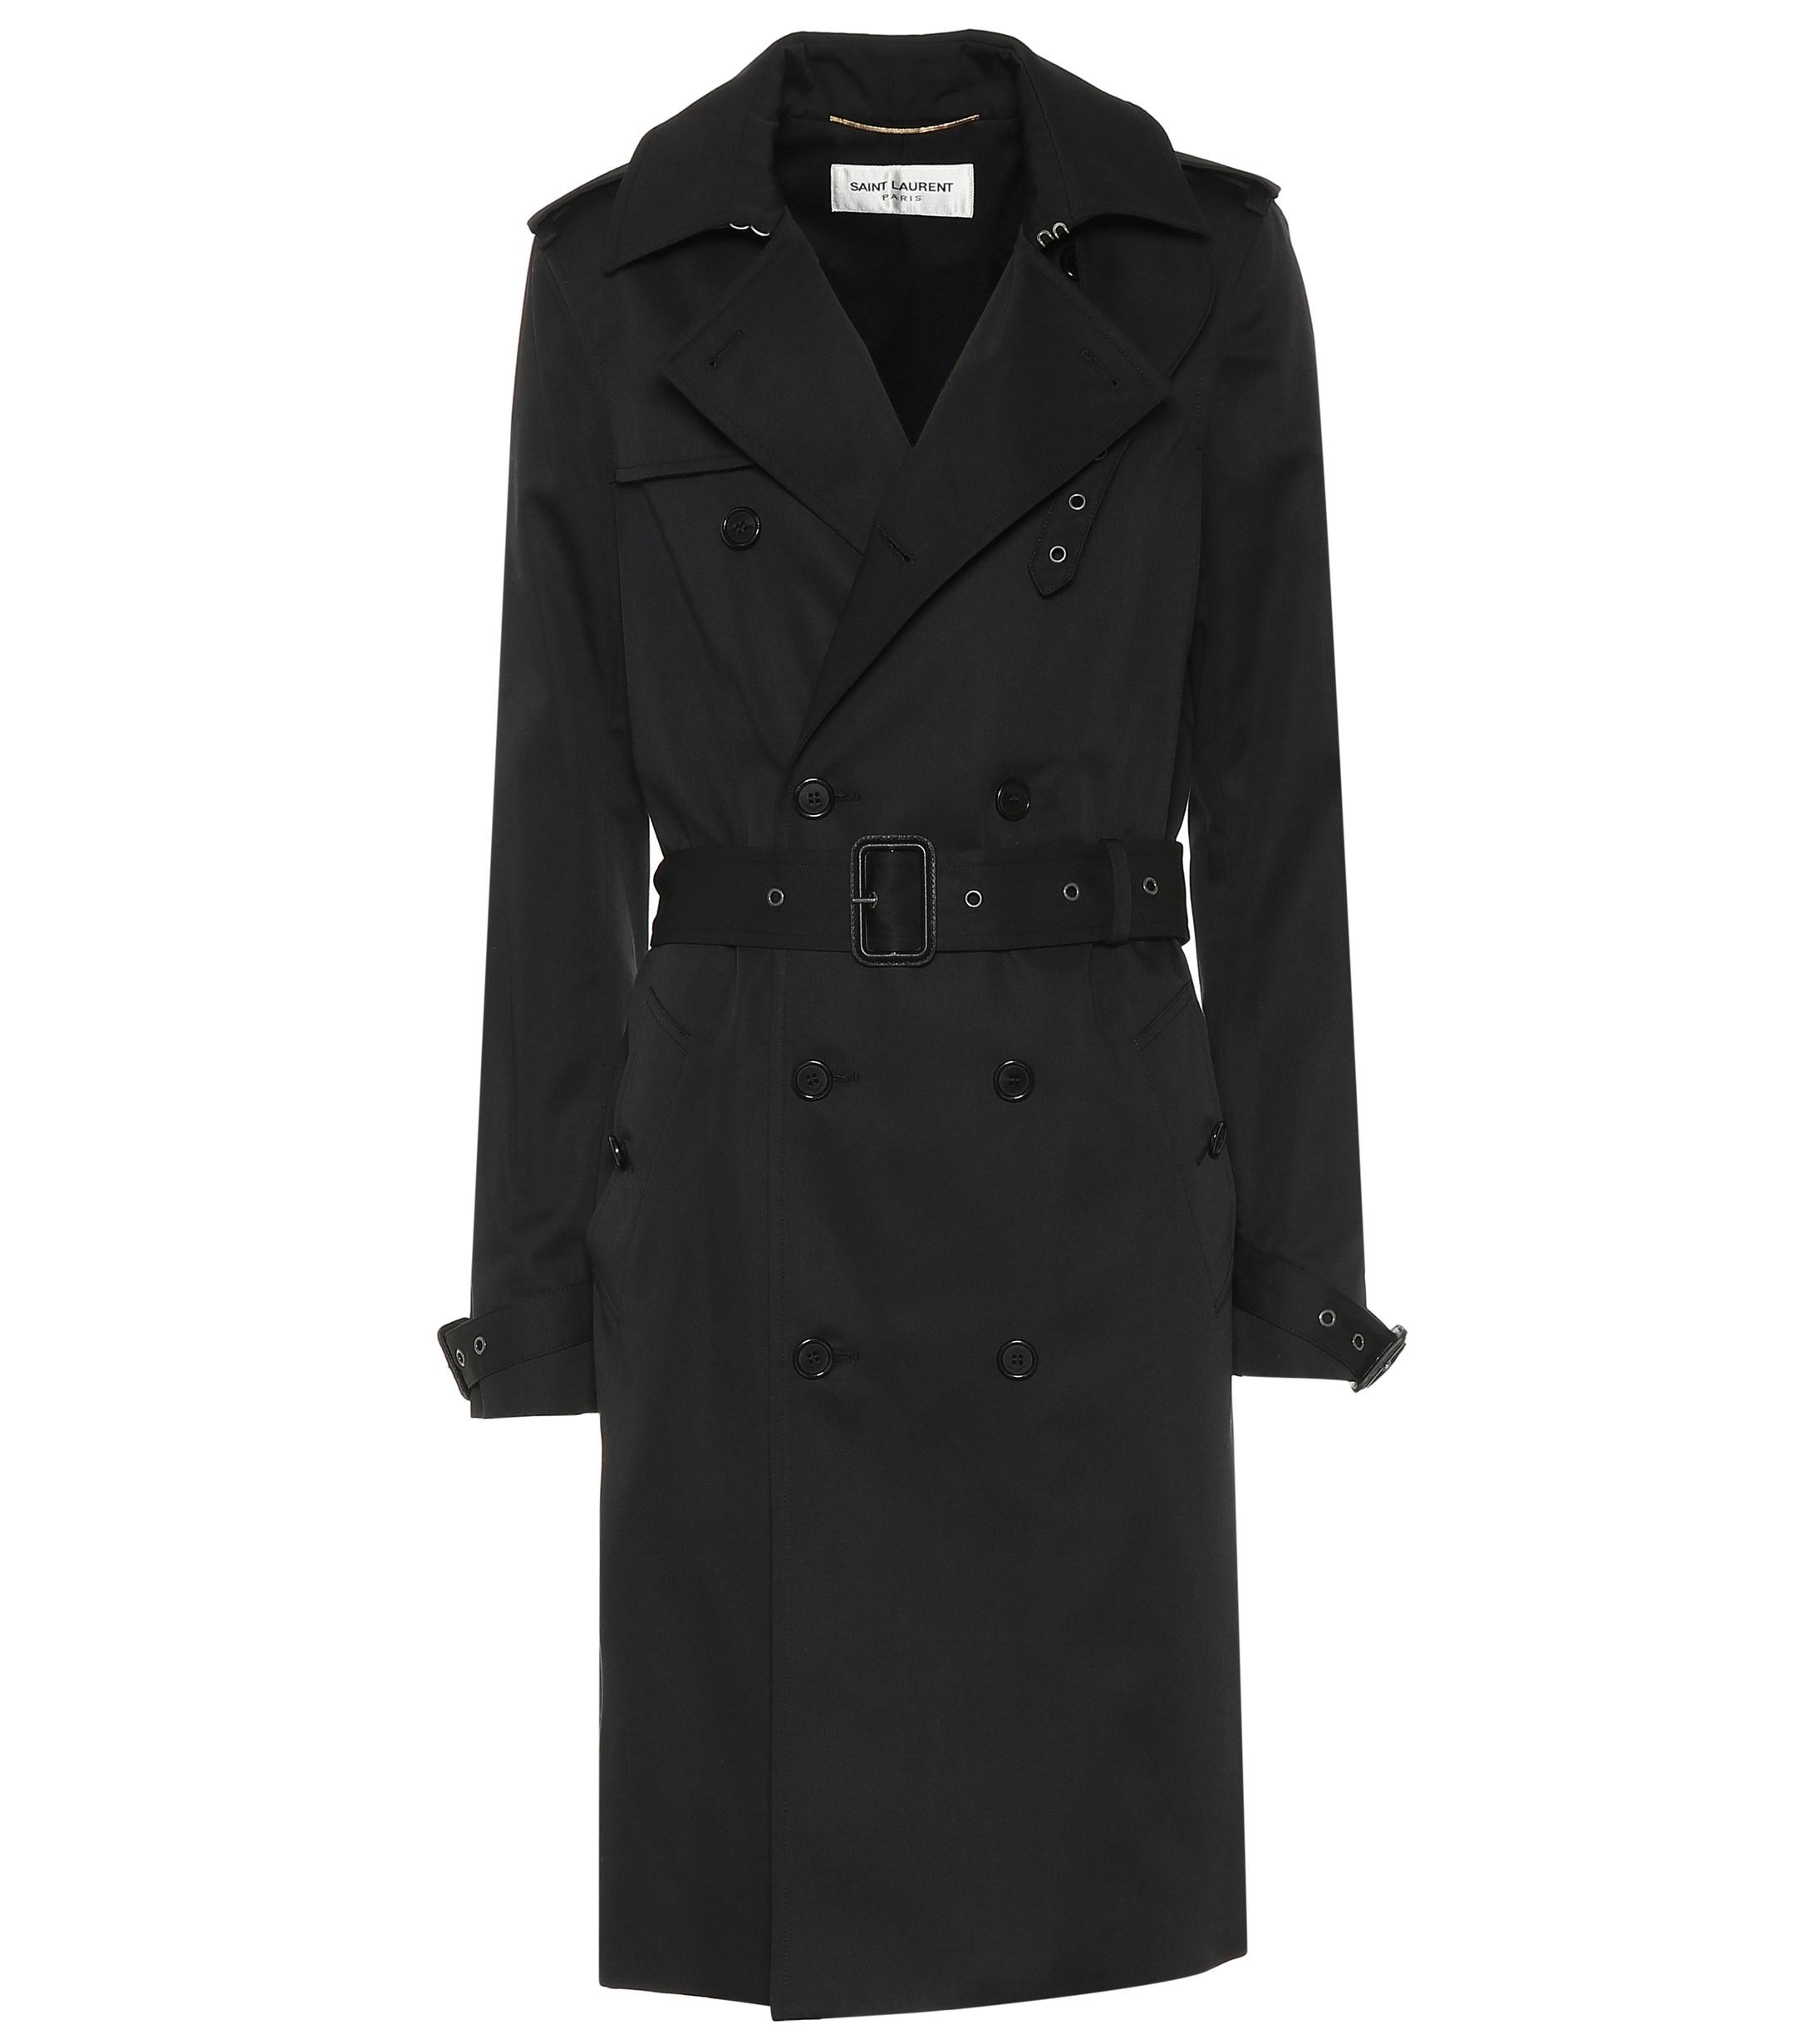 Lyst - Saint Laurent Cotton-blend Trench Coat in Black